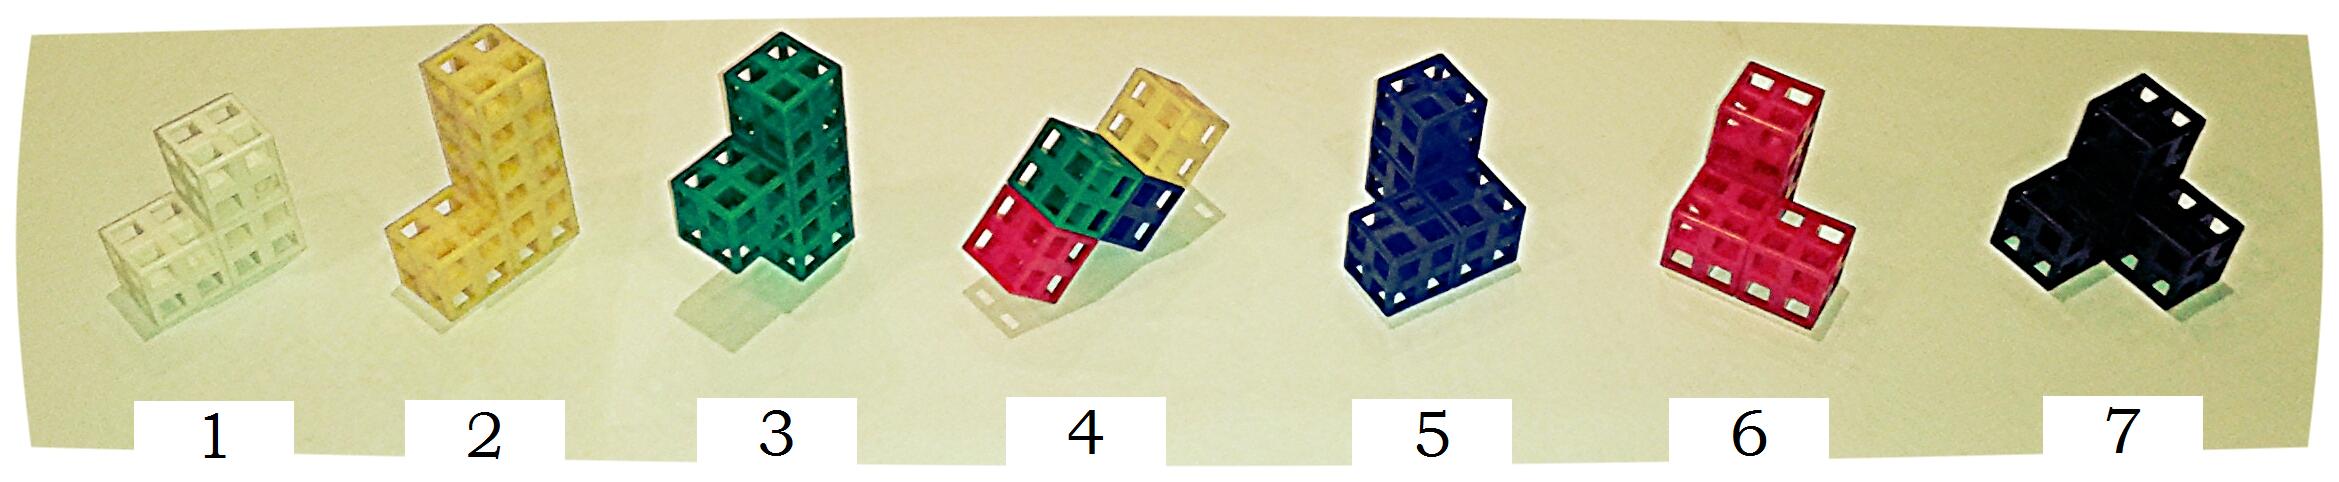 La pieza L “corta” es blanca y su número es el 1, la L es amarilla y el 2, la pieza T es verde y tiene el 3, la Z debería de ser naranja, aunque nosotros a falta de cubos naranjas la hemos fabricado multicolor, y su número es el 4, la pieza azul tiene el 5 y su imagen especular es roja con el número 6, y finalmente, la pieza esquina es negra y su número es el 7